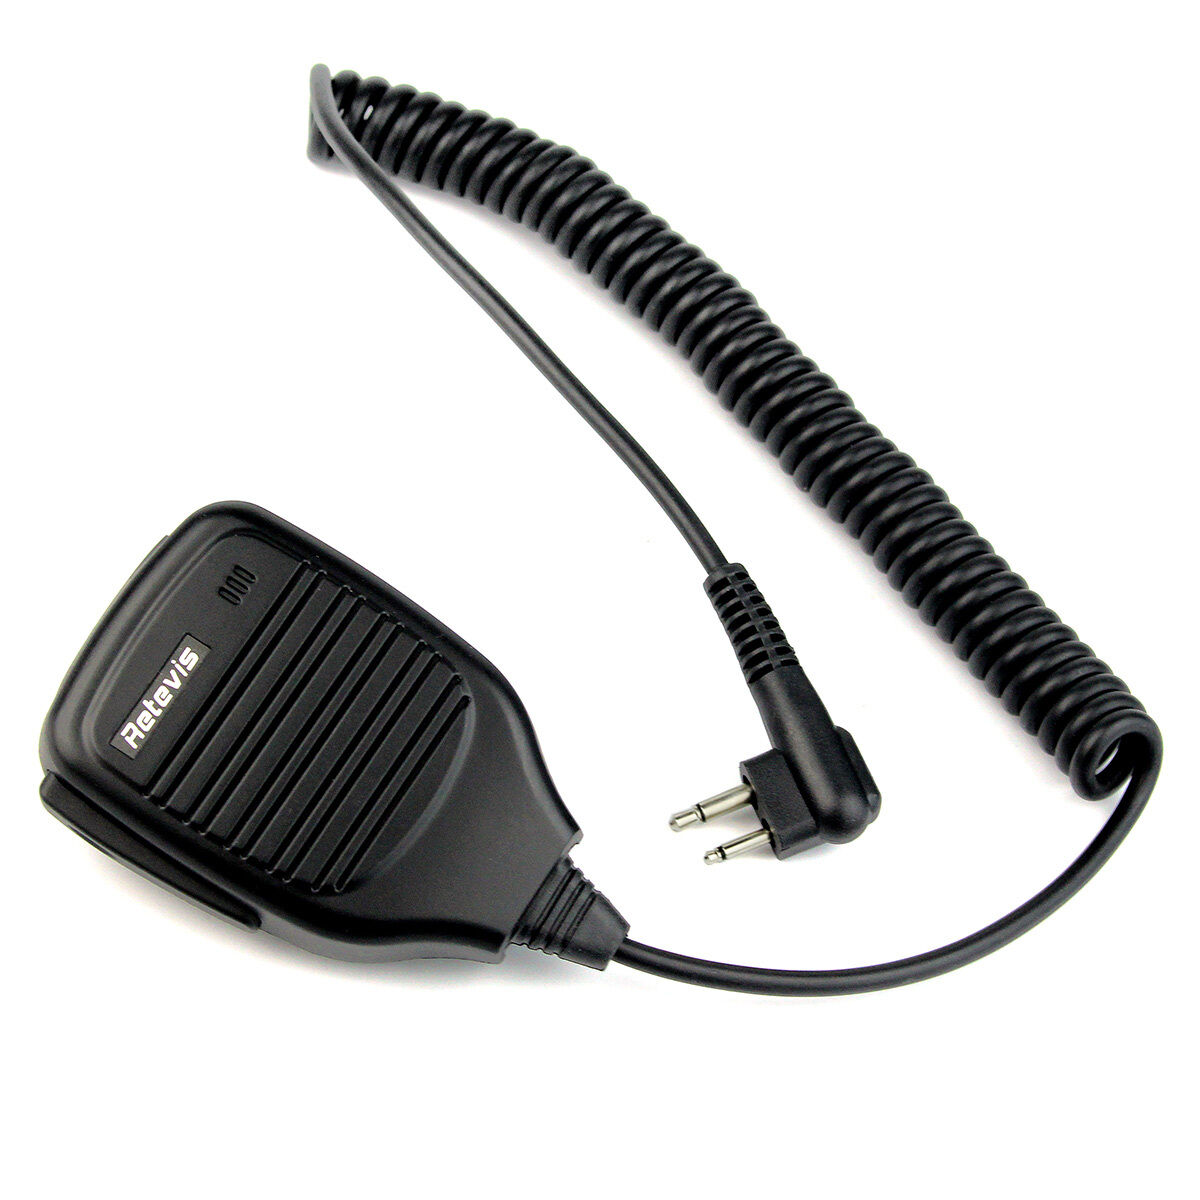 Altavoz - Micrófono (Pera) para Radios de Comunicación Motorola / HYT | M1 / 2 Pin | CRC-AM-01